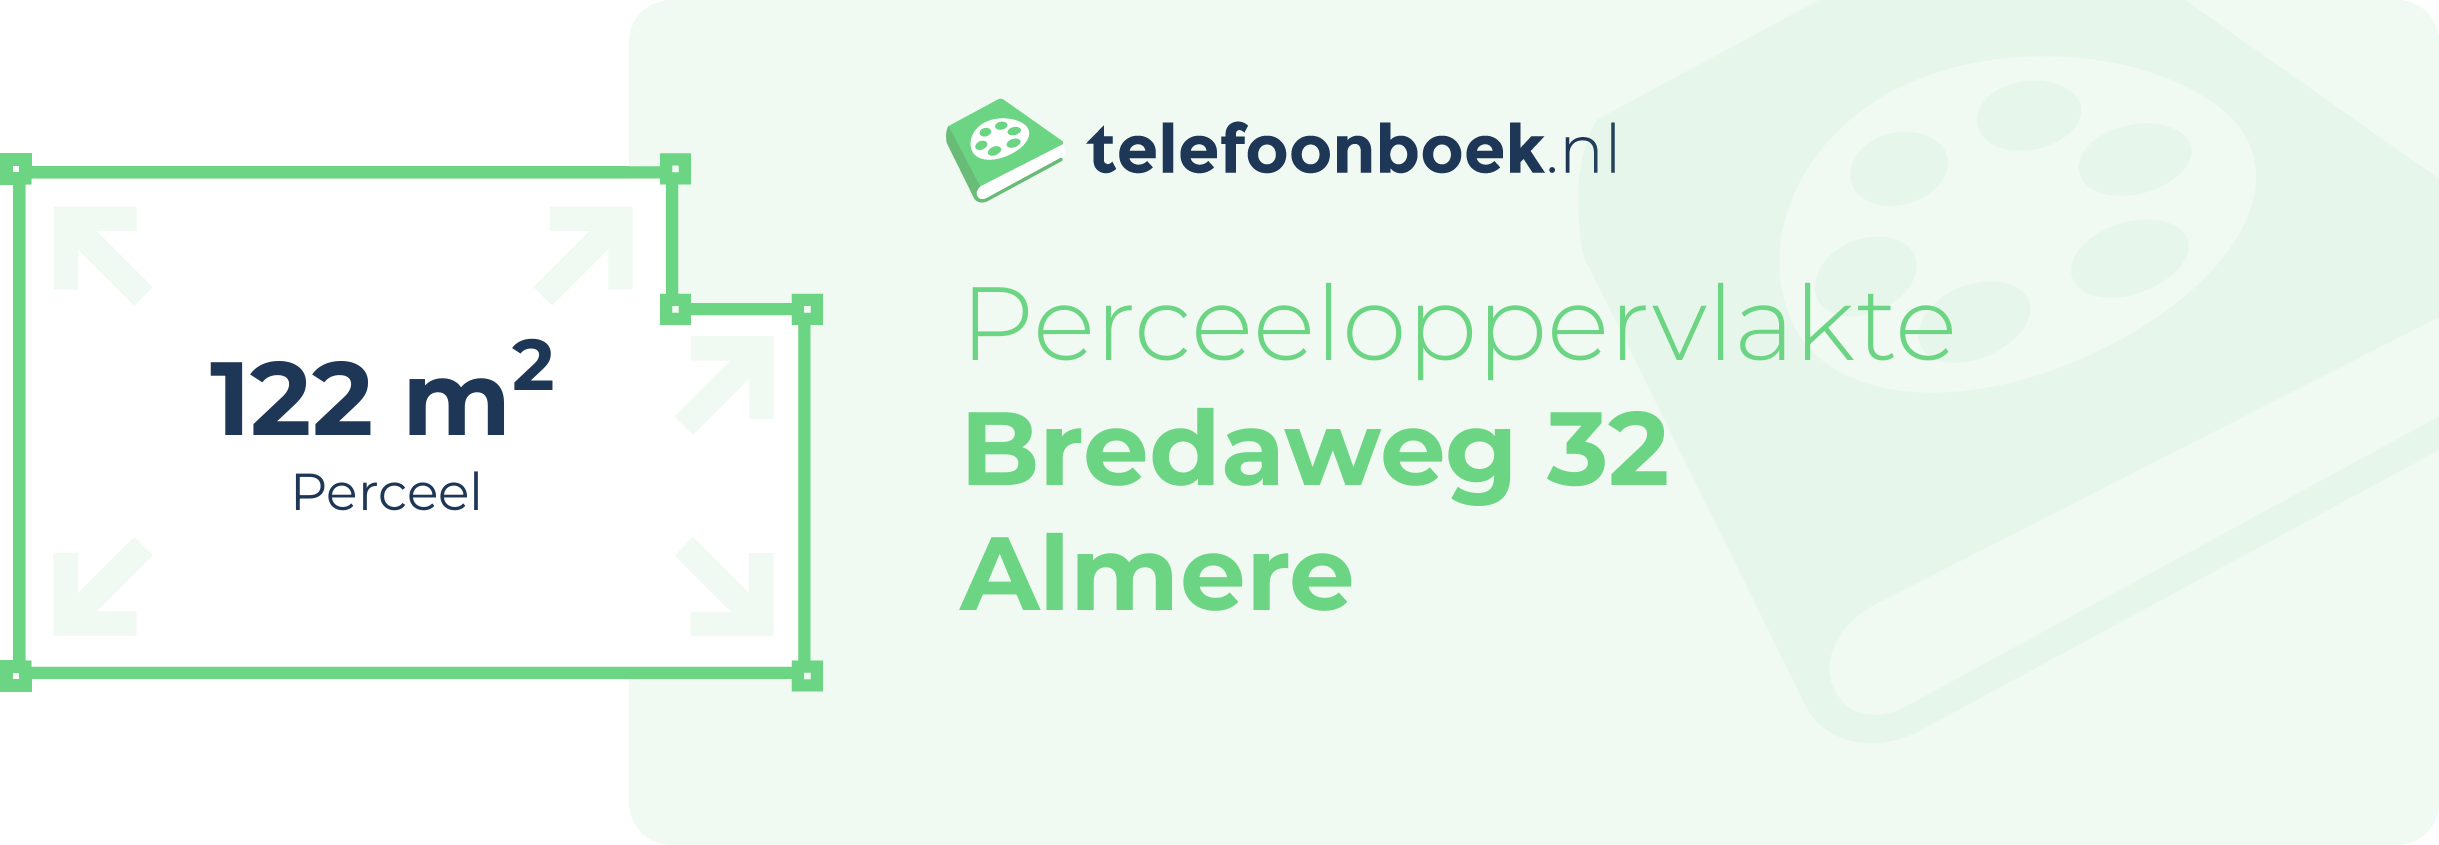 Perceeloppervlakte Bredaweg 32 Almere